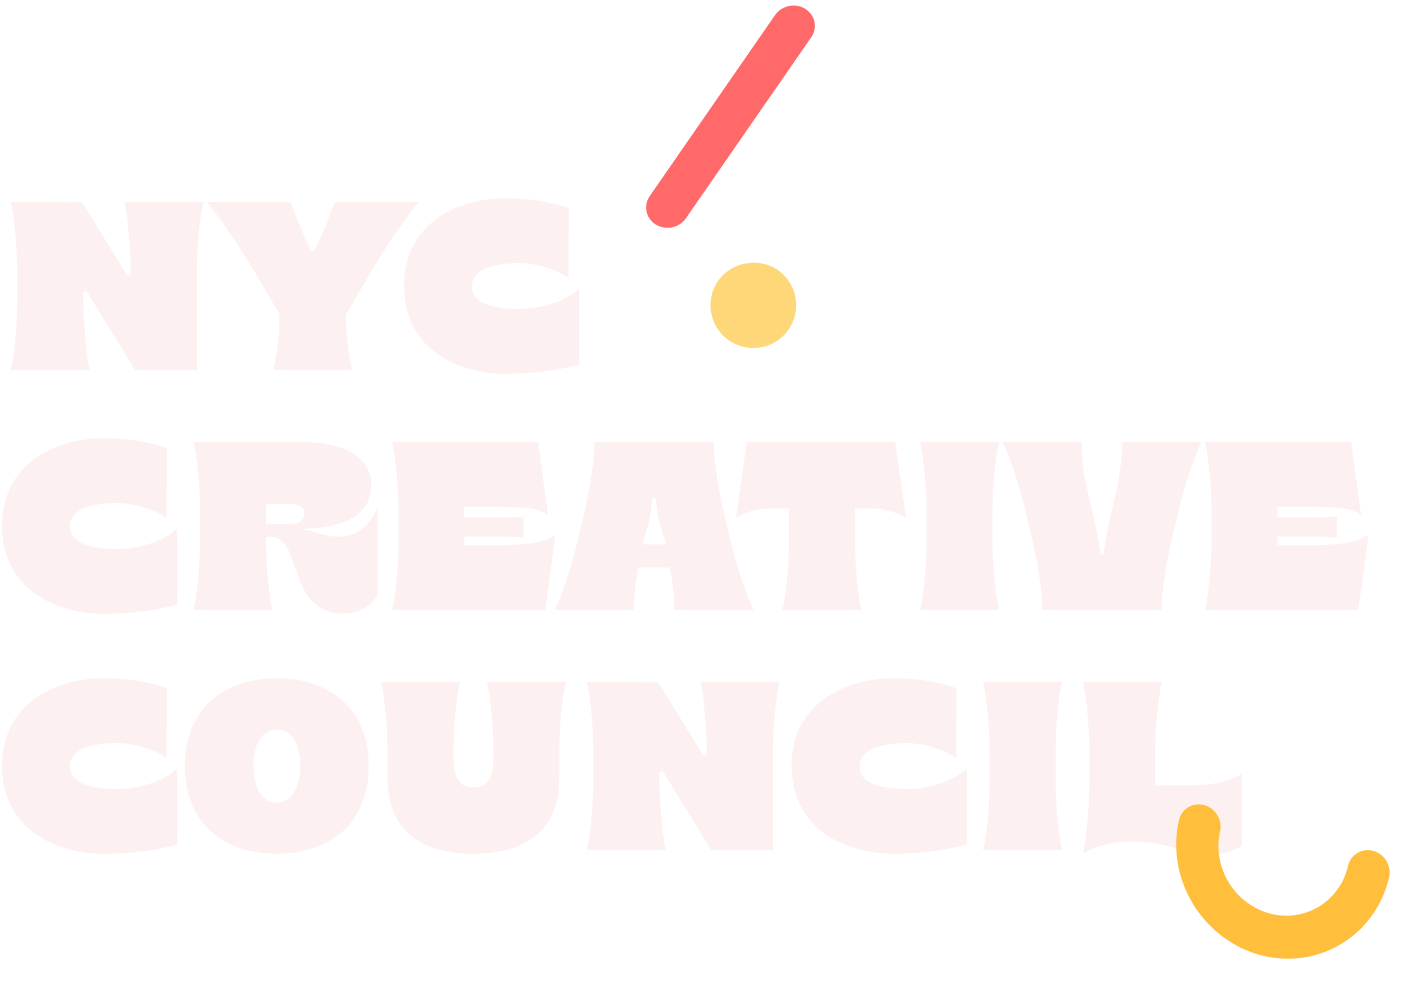 NYC Creative Council text